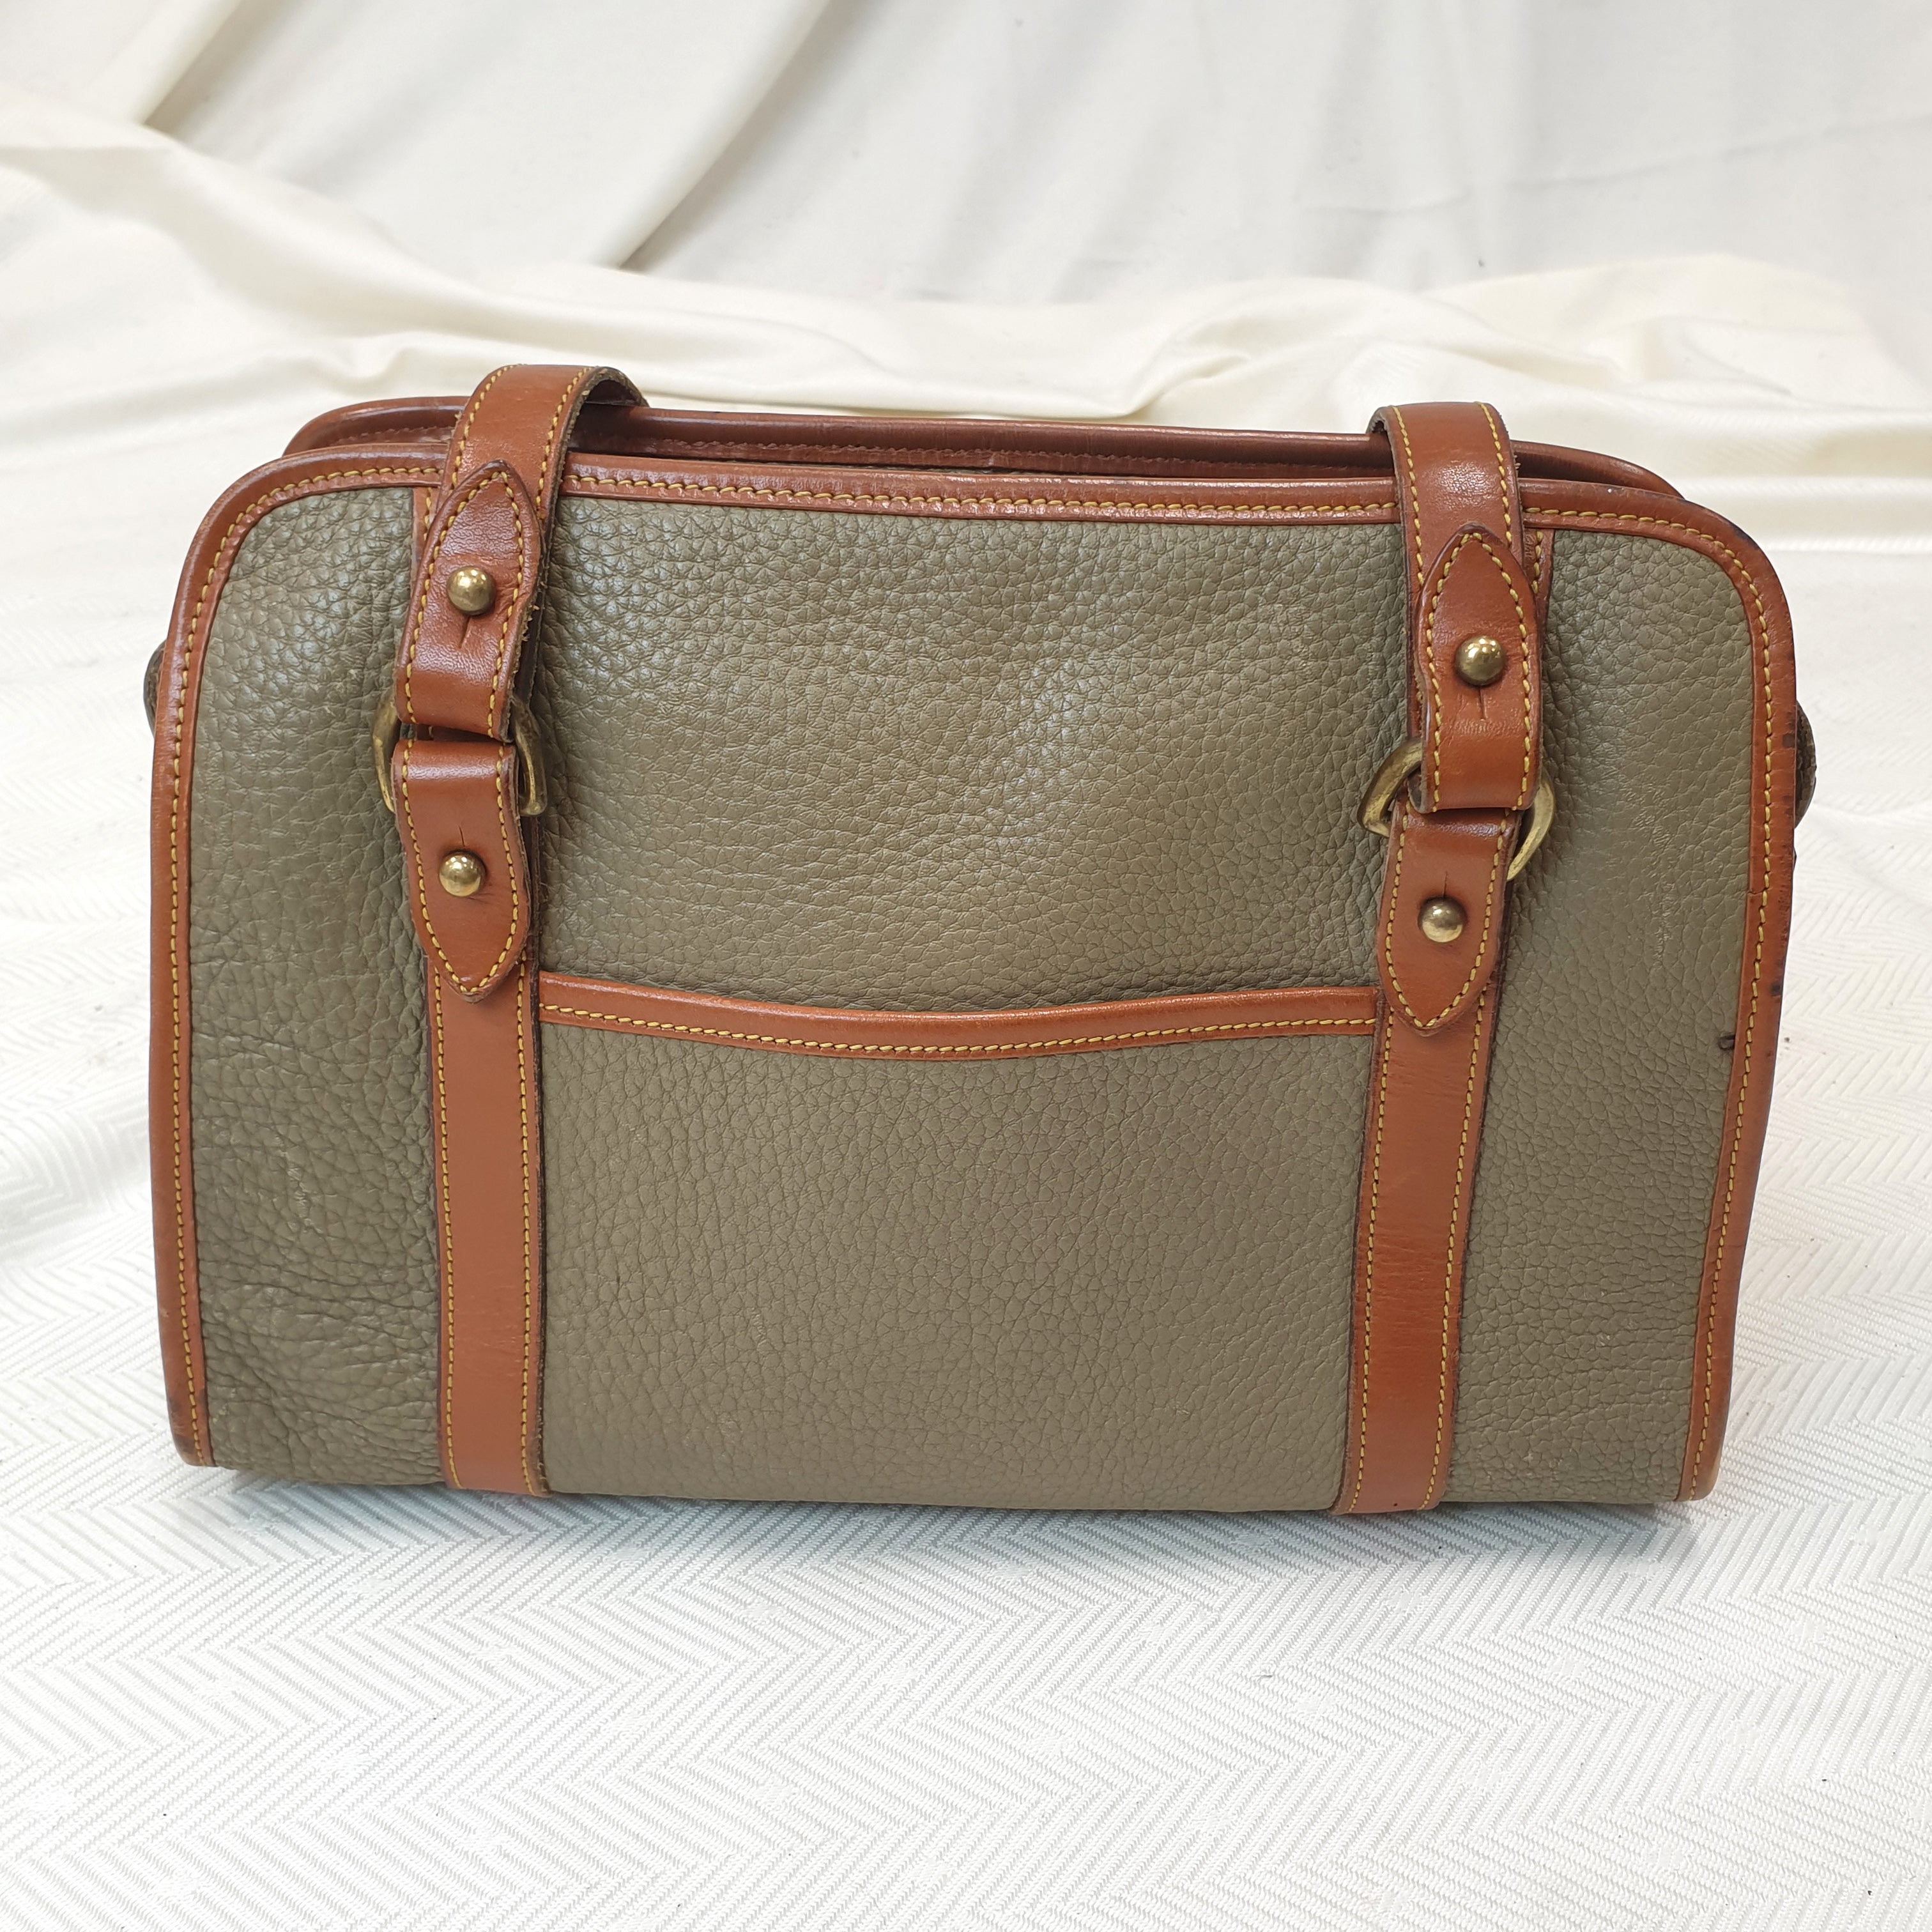 Dooney & Bourke Olivegreen Leather Shoulderbag